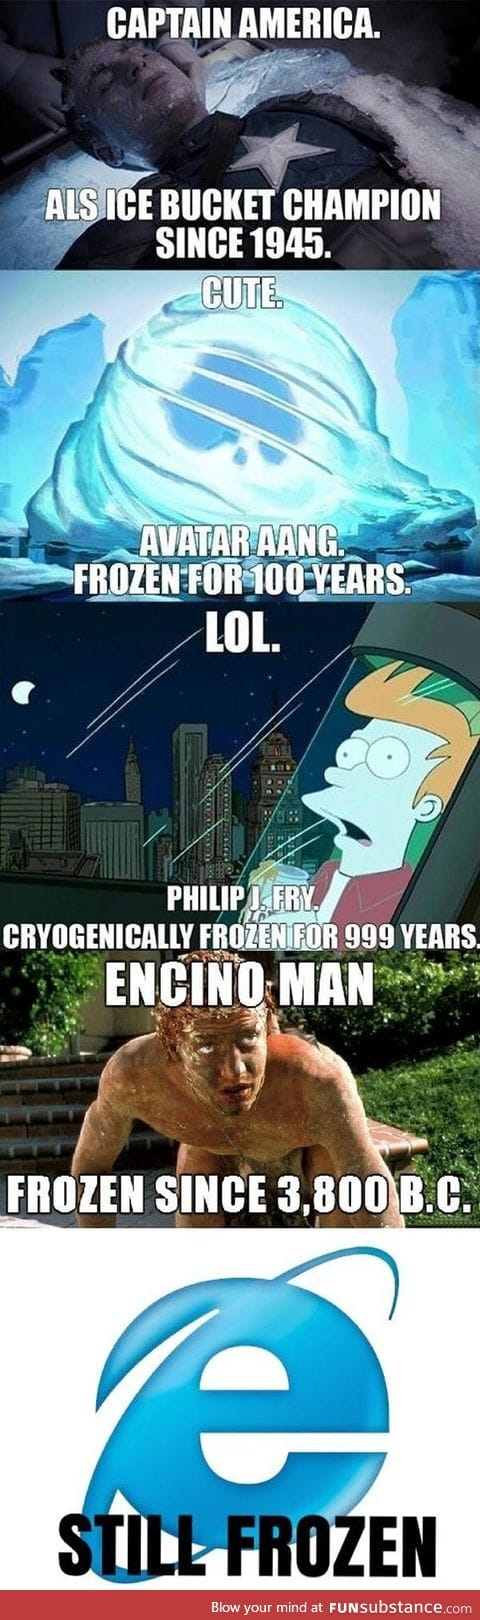 Still frozen